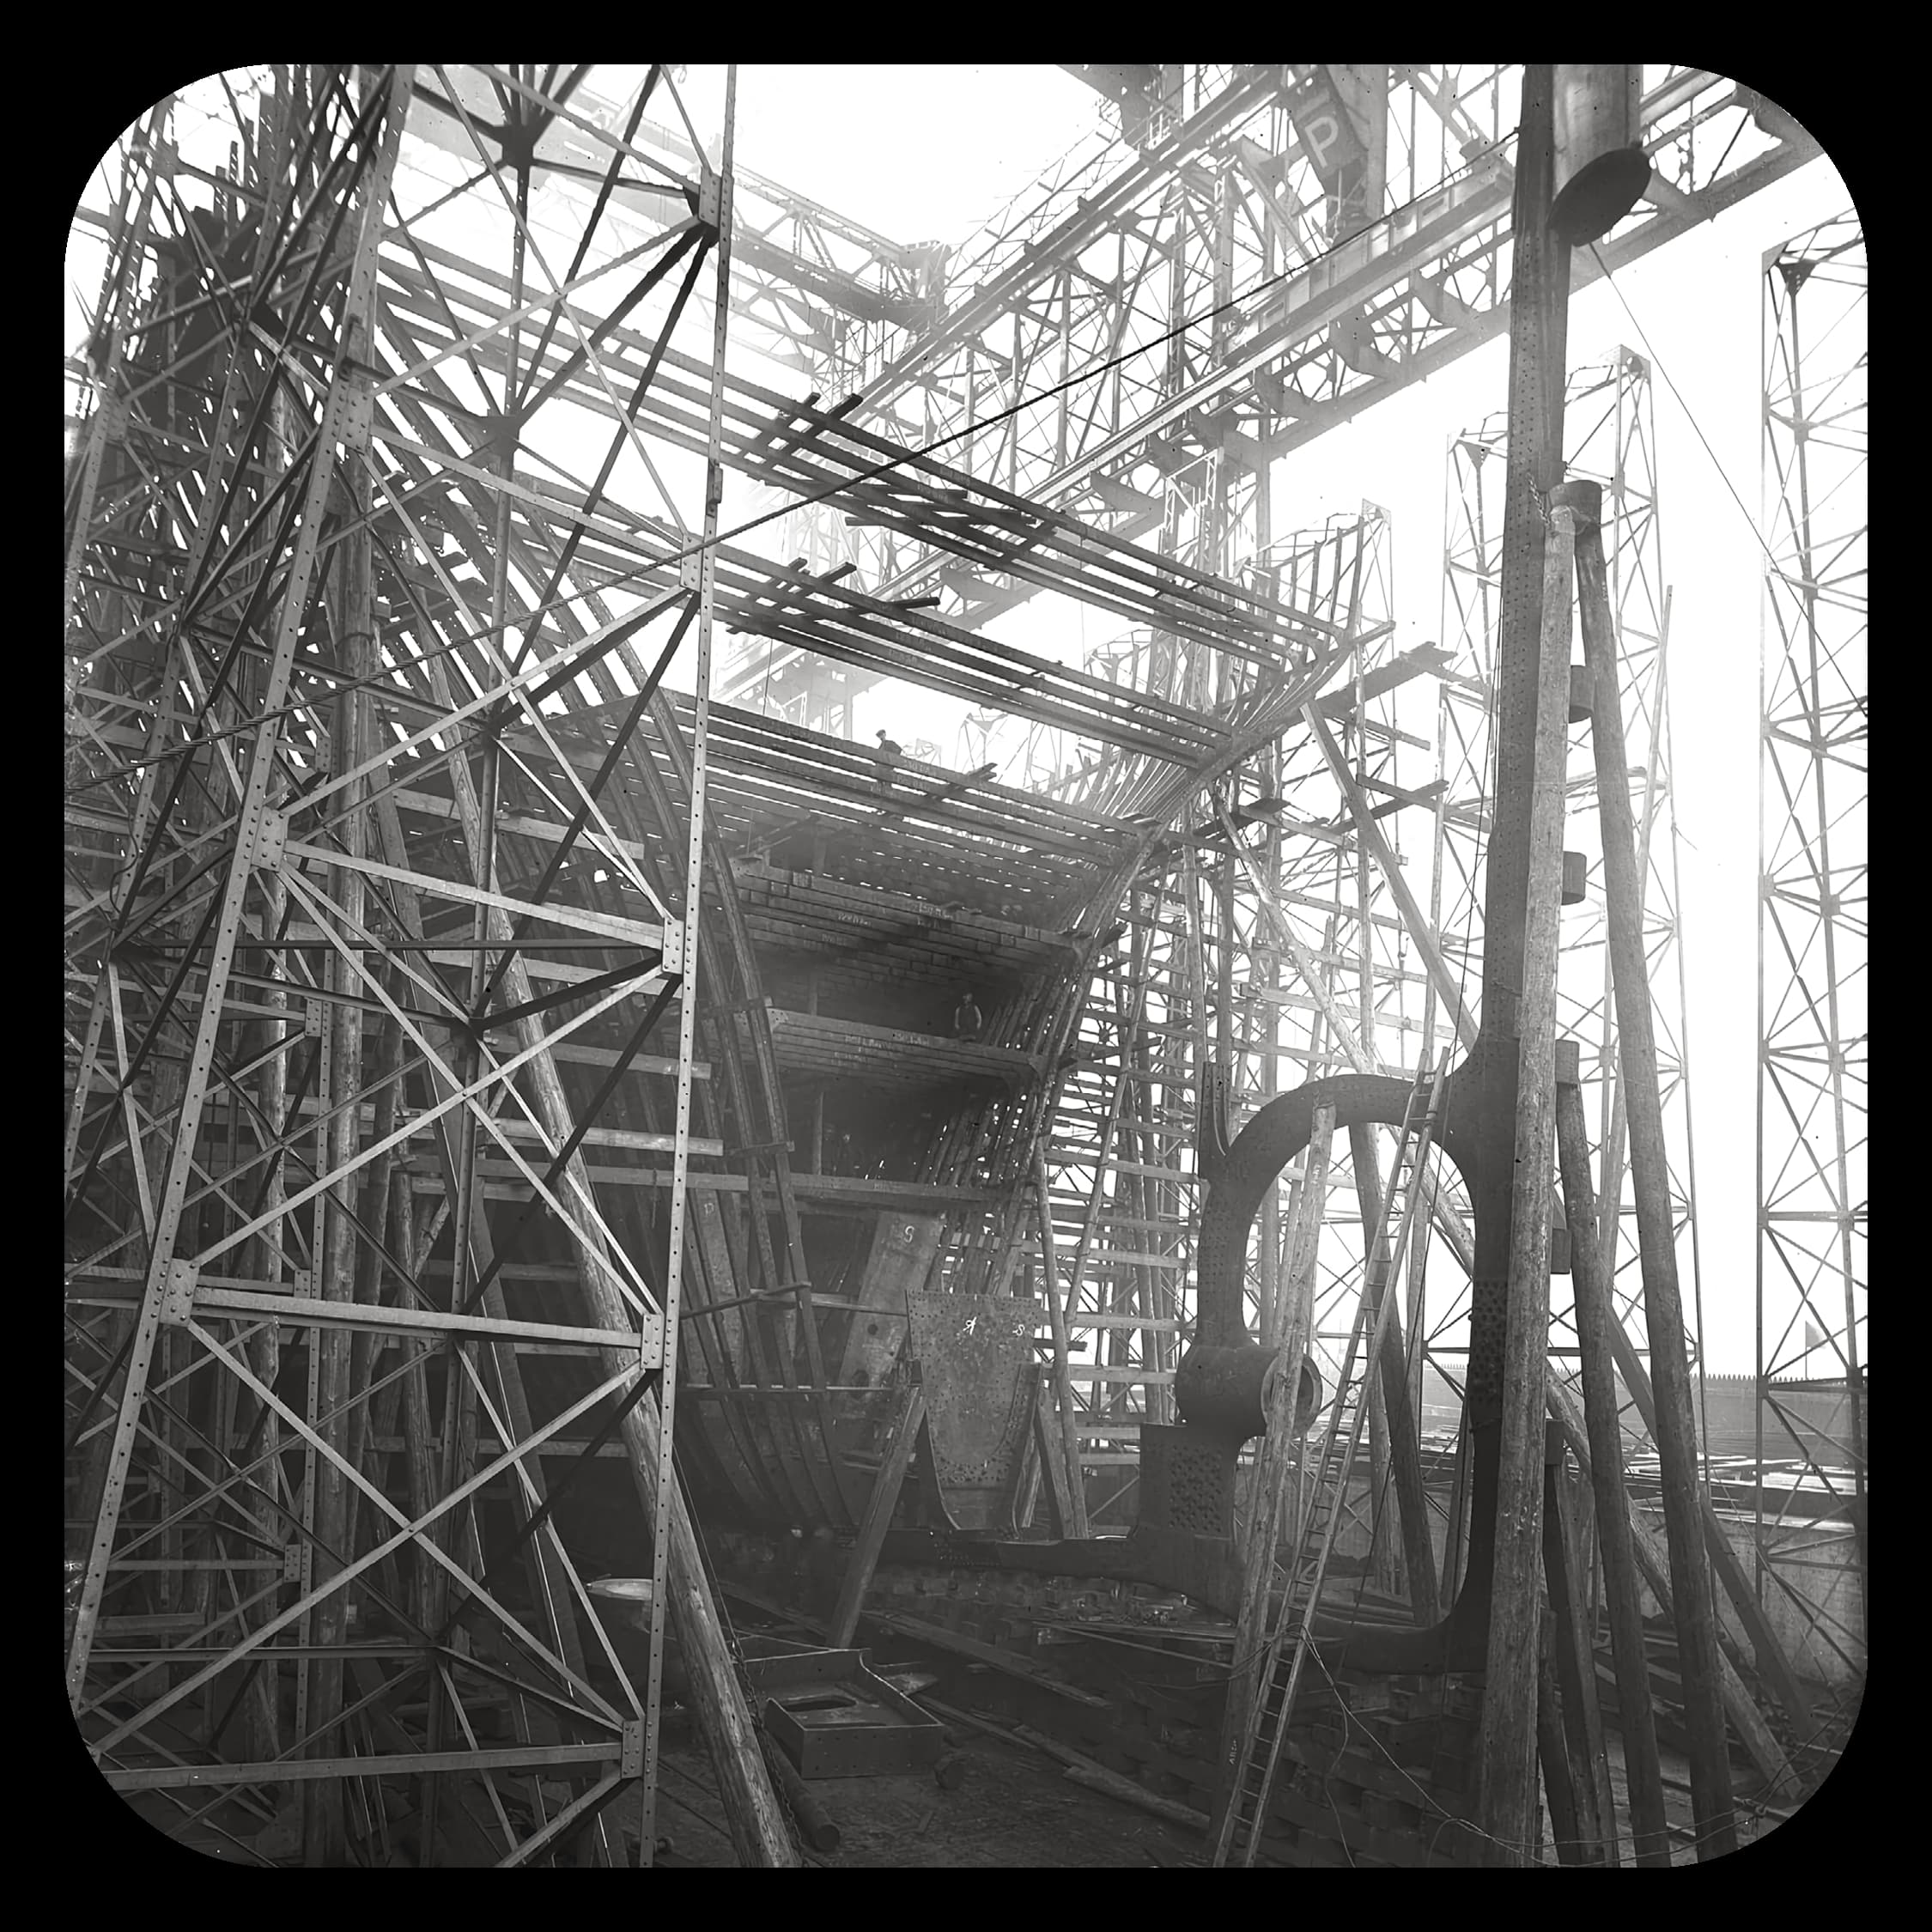 Construction on Titanic begins in Belfast, Ireland, modern day Northern Ireland.